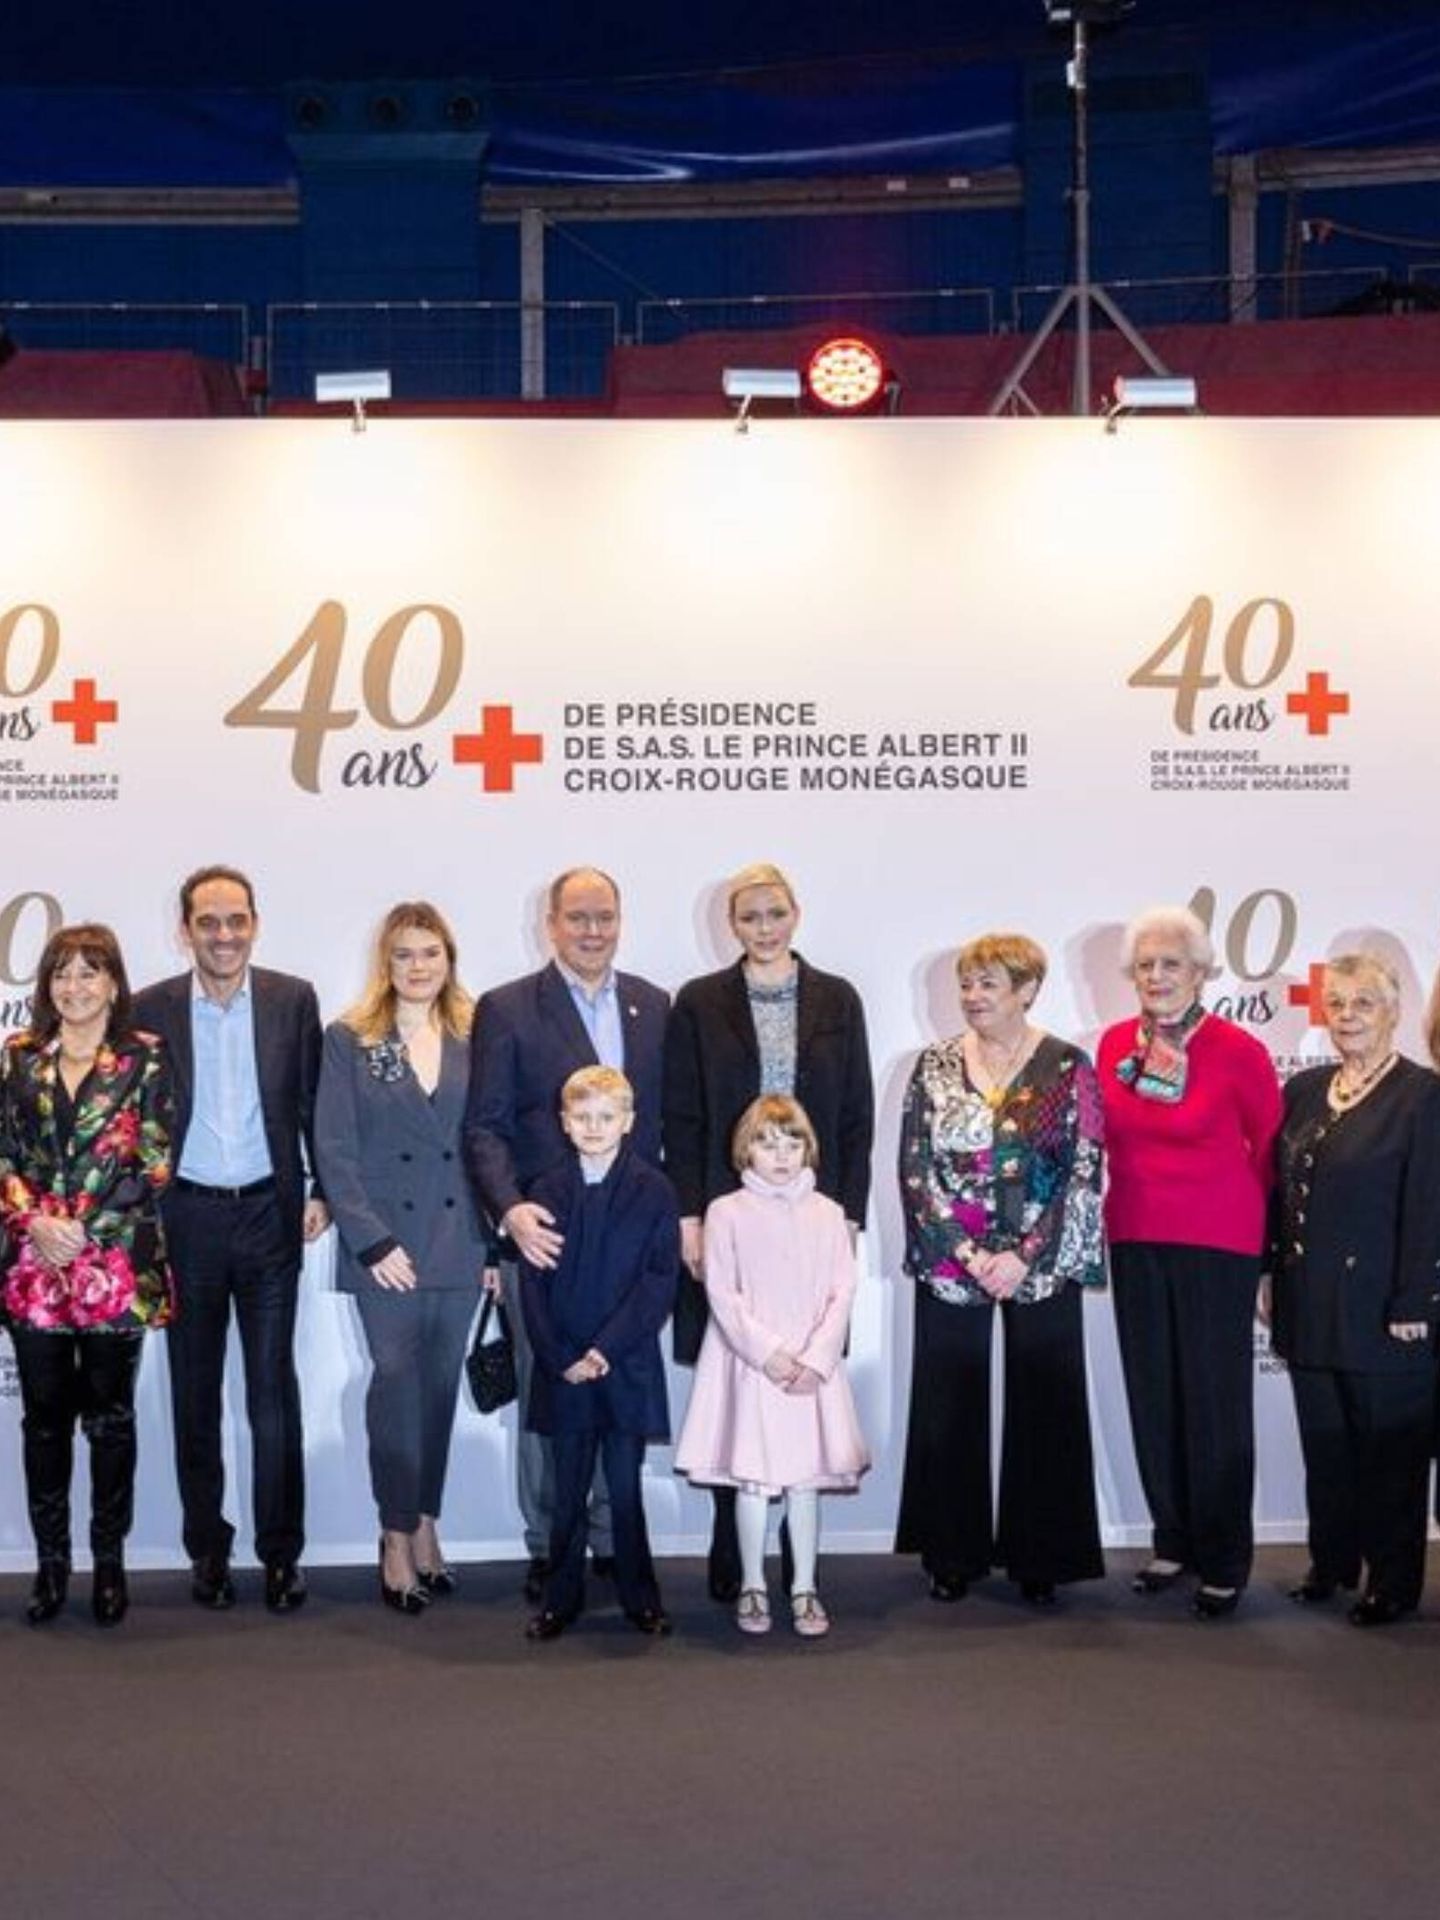 Foto de familia con Camille Gottlieb, hija de la princesa Estefanía de Mónaco. (Cruz Roja monegasca)